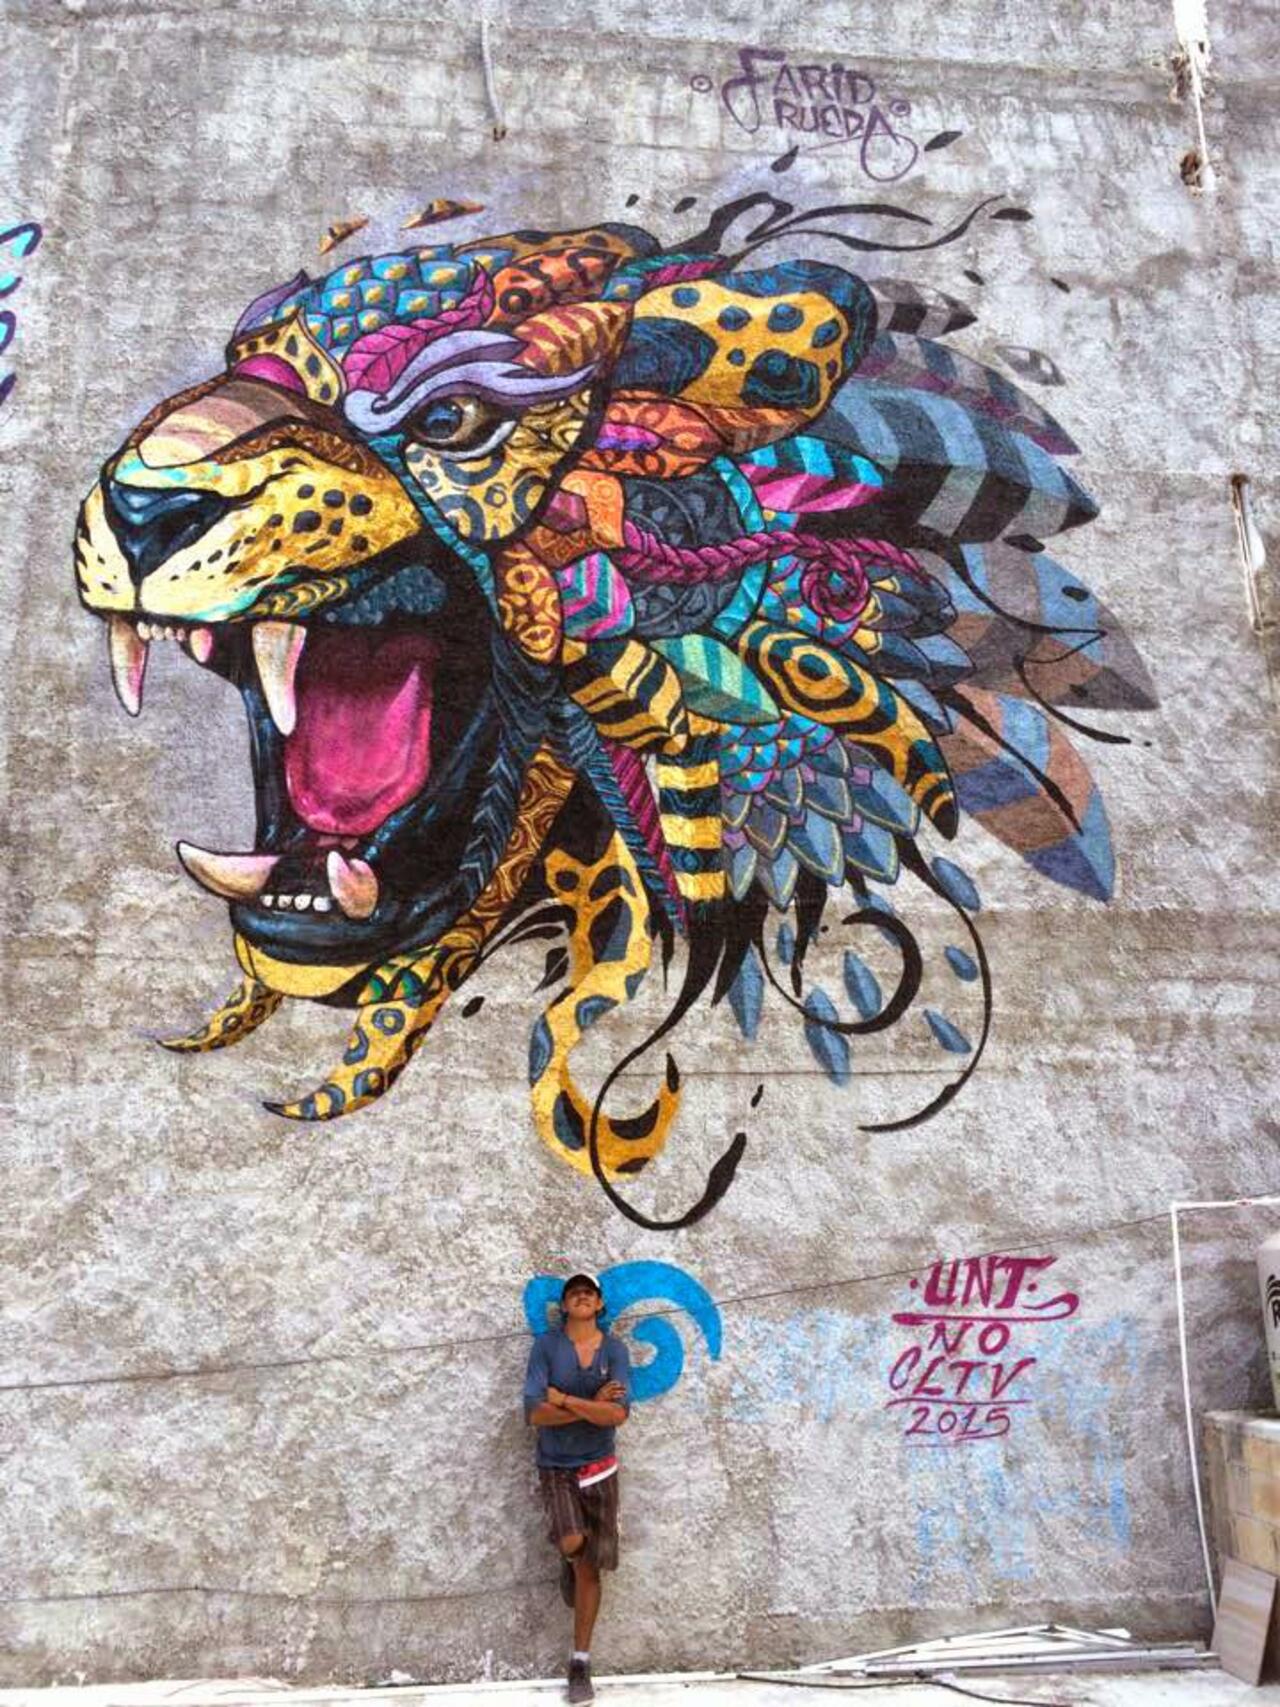 RT @streetartscout: Farid Rueda – Playa Del Carmen, Mexico http://designsalp.com/2015/05/04/the-10-most-popular-street-art-pieces-of-april-2015 … via @designsalp #streetart #mexico #graffiti #mural http://t.co/nusiVYddy5